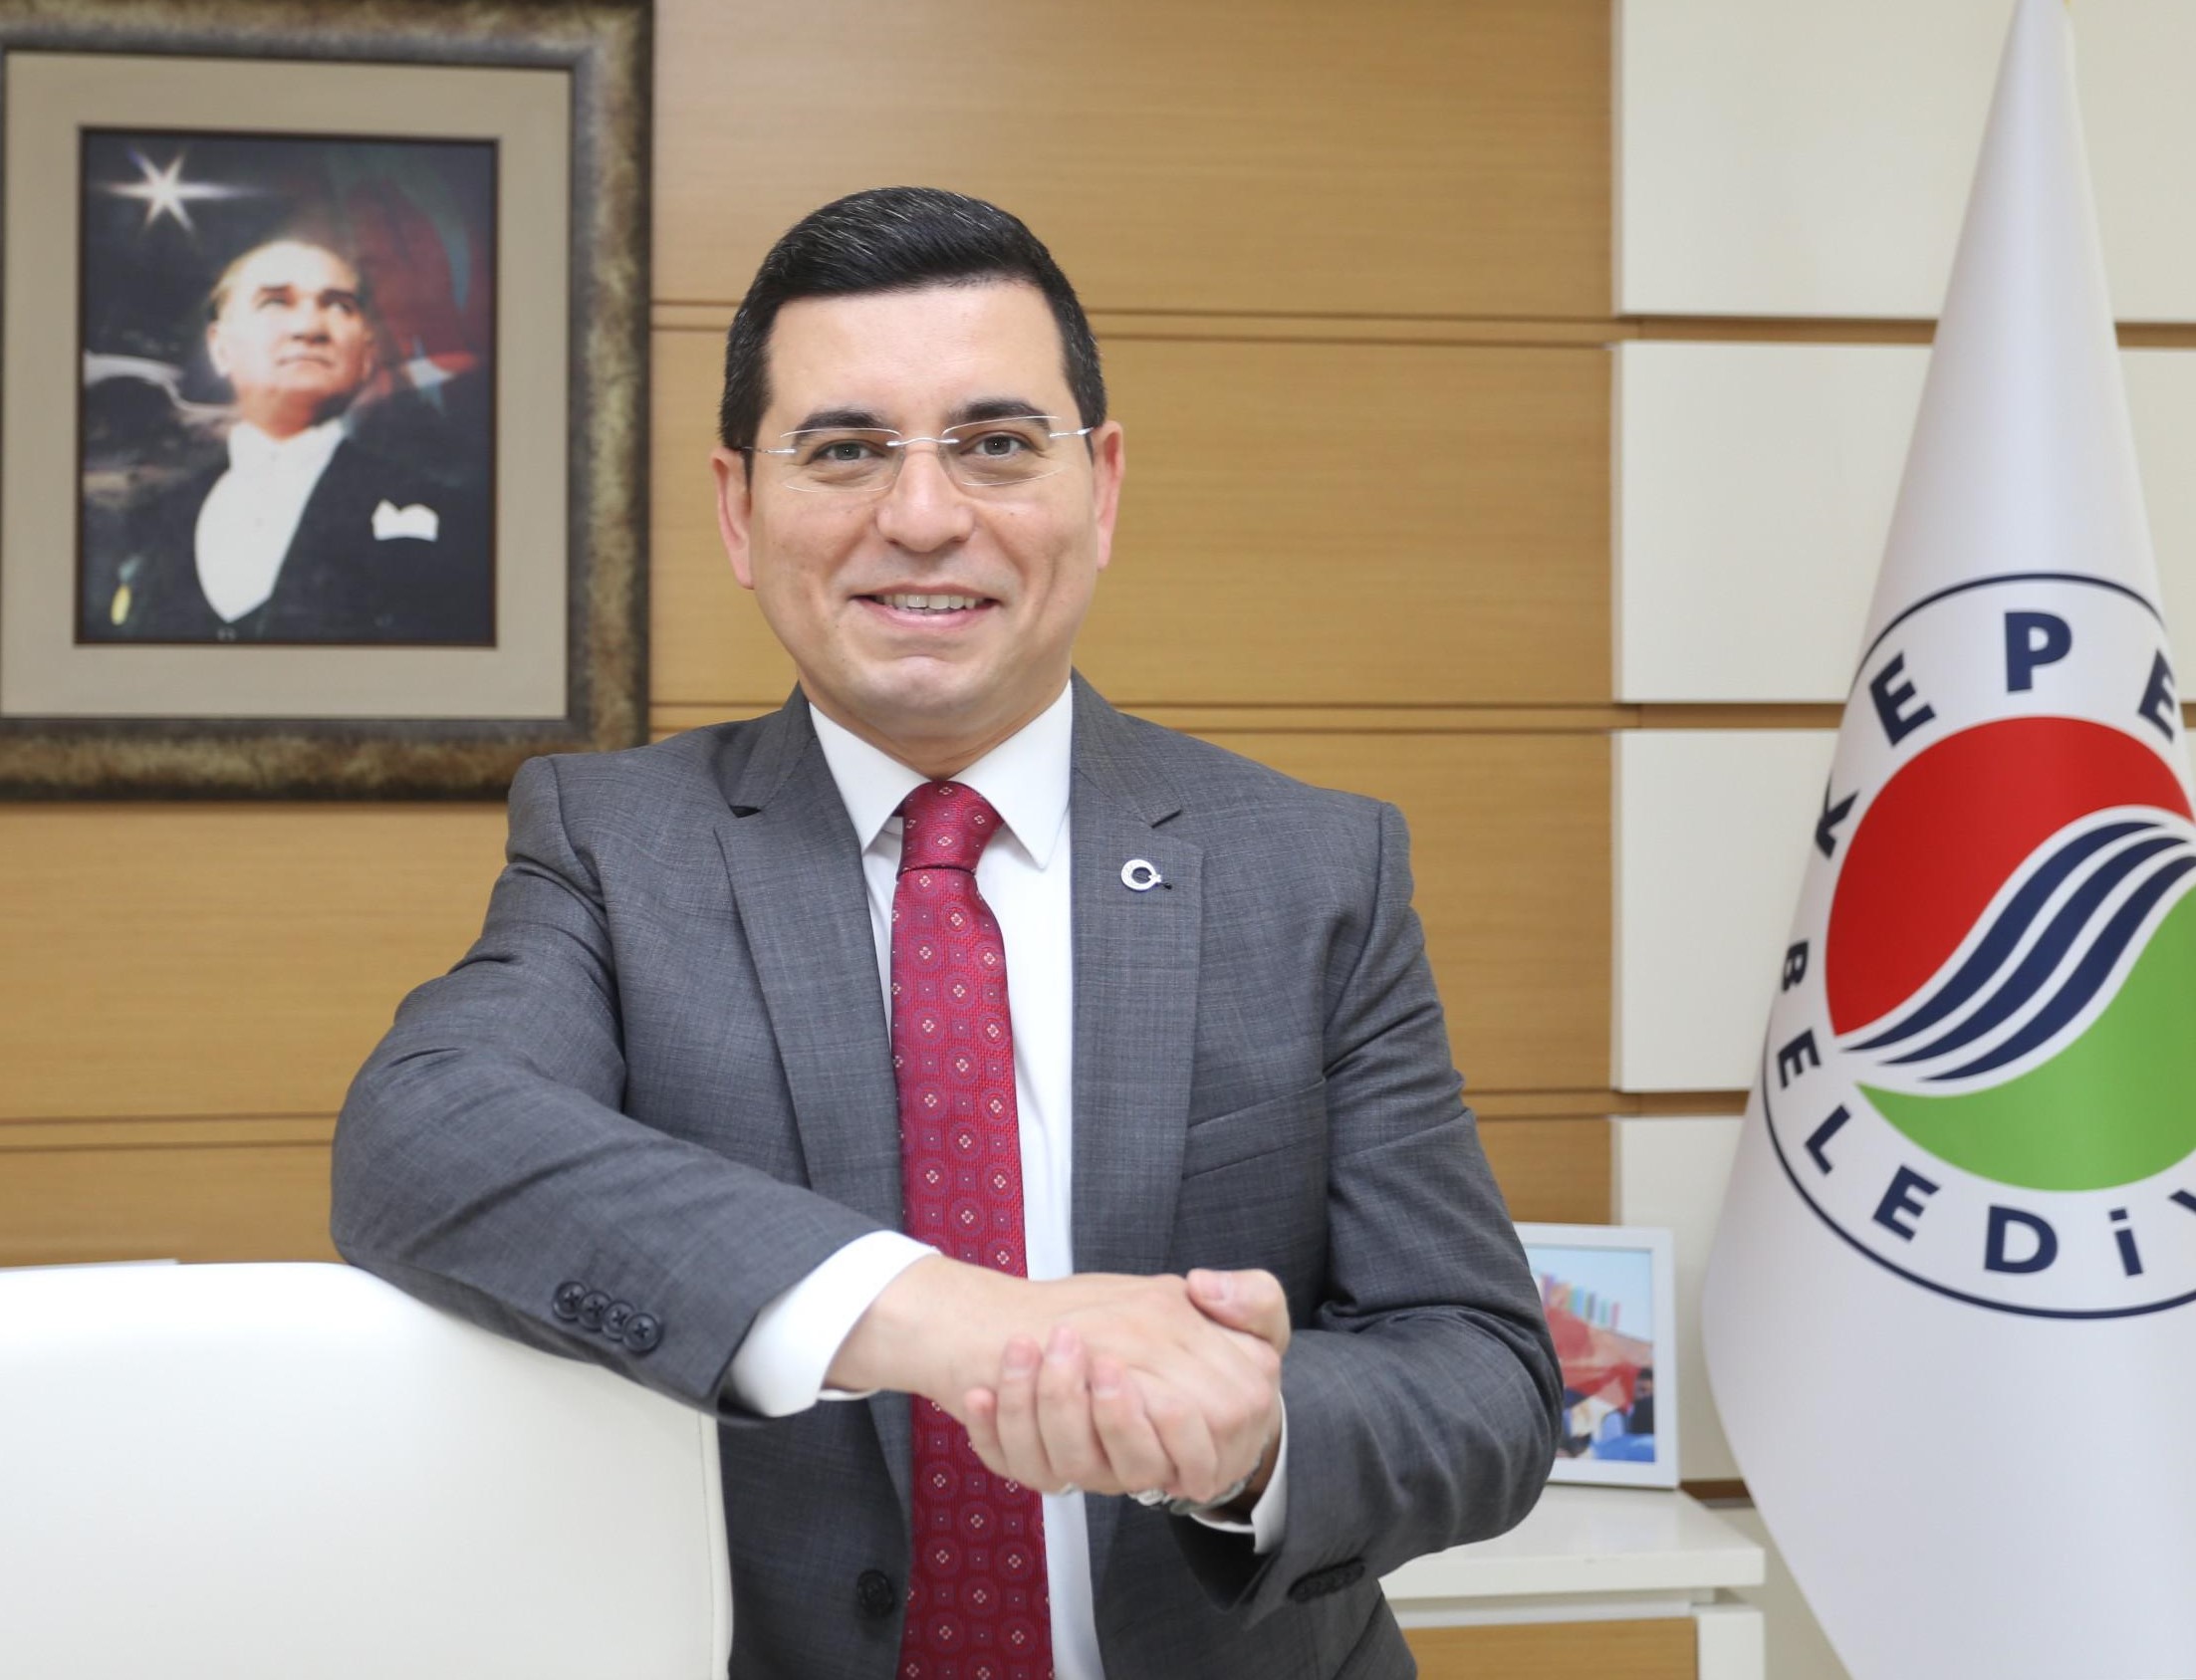 Kepez Belediye Başkanı Hakan Tütüncü’nün 24 Kasım Öğretmenler Günü Mesajı